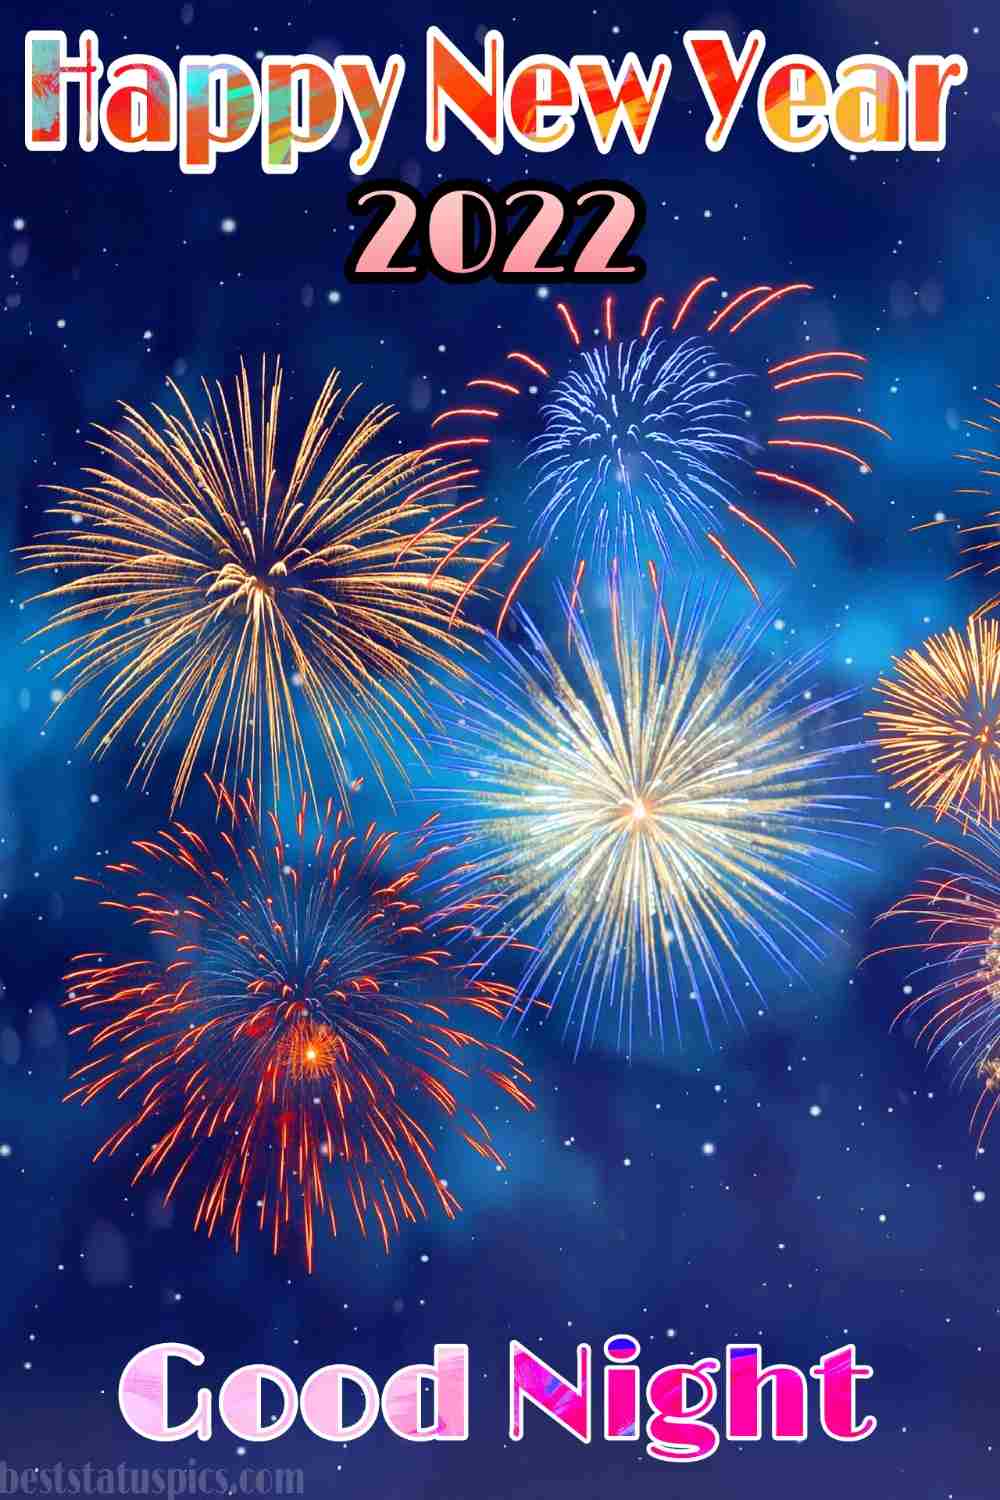 Buona notte Felice anno nuovo 2022 augura immagini HD con fuochi d'artificio per la storia di Instagram 